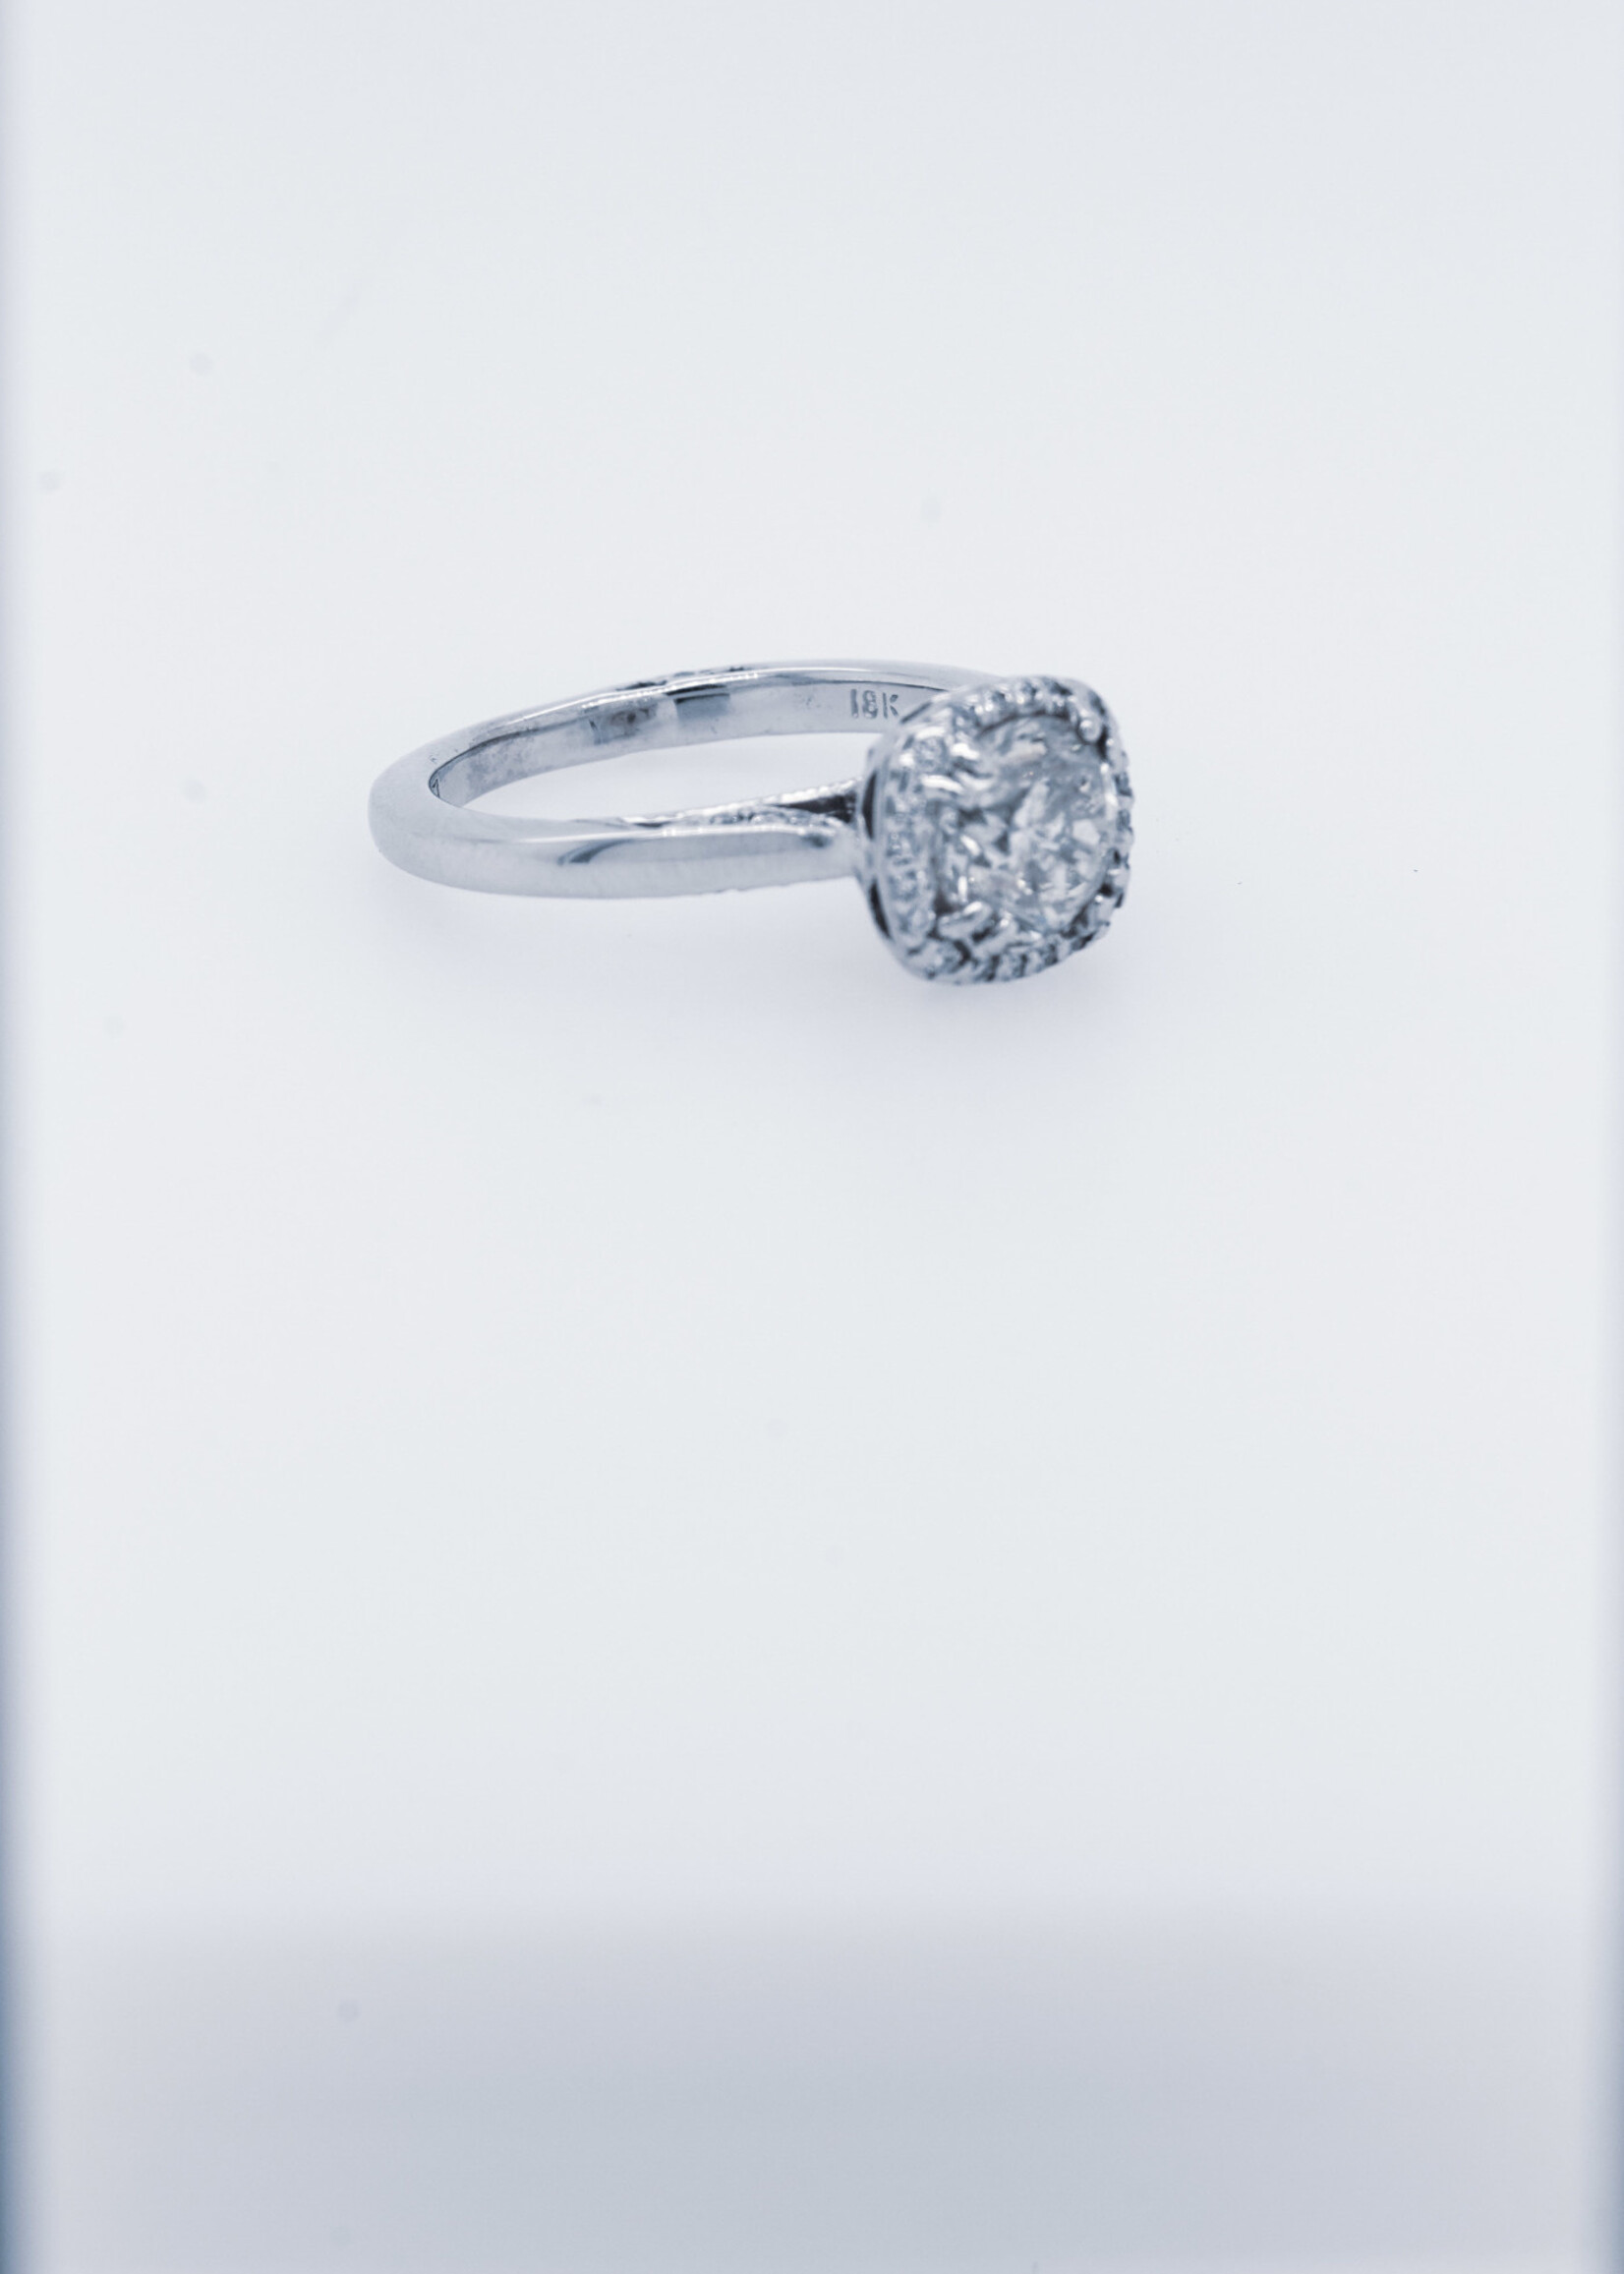 18KW 4.35g 1.30ctw (1.10ctr) I/I1 Round Diamond Tacori Halo Engagement Ring (size 4.5)